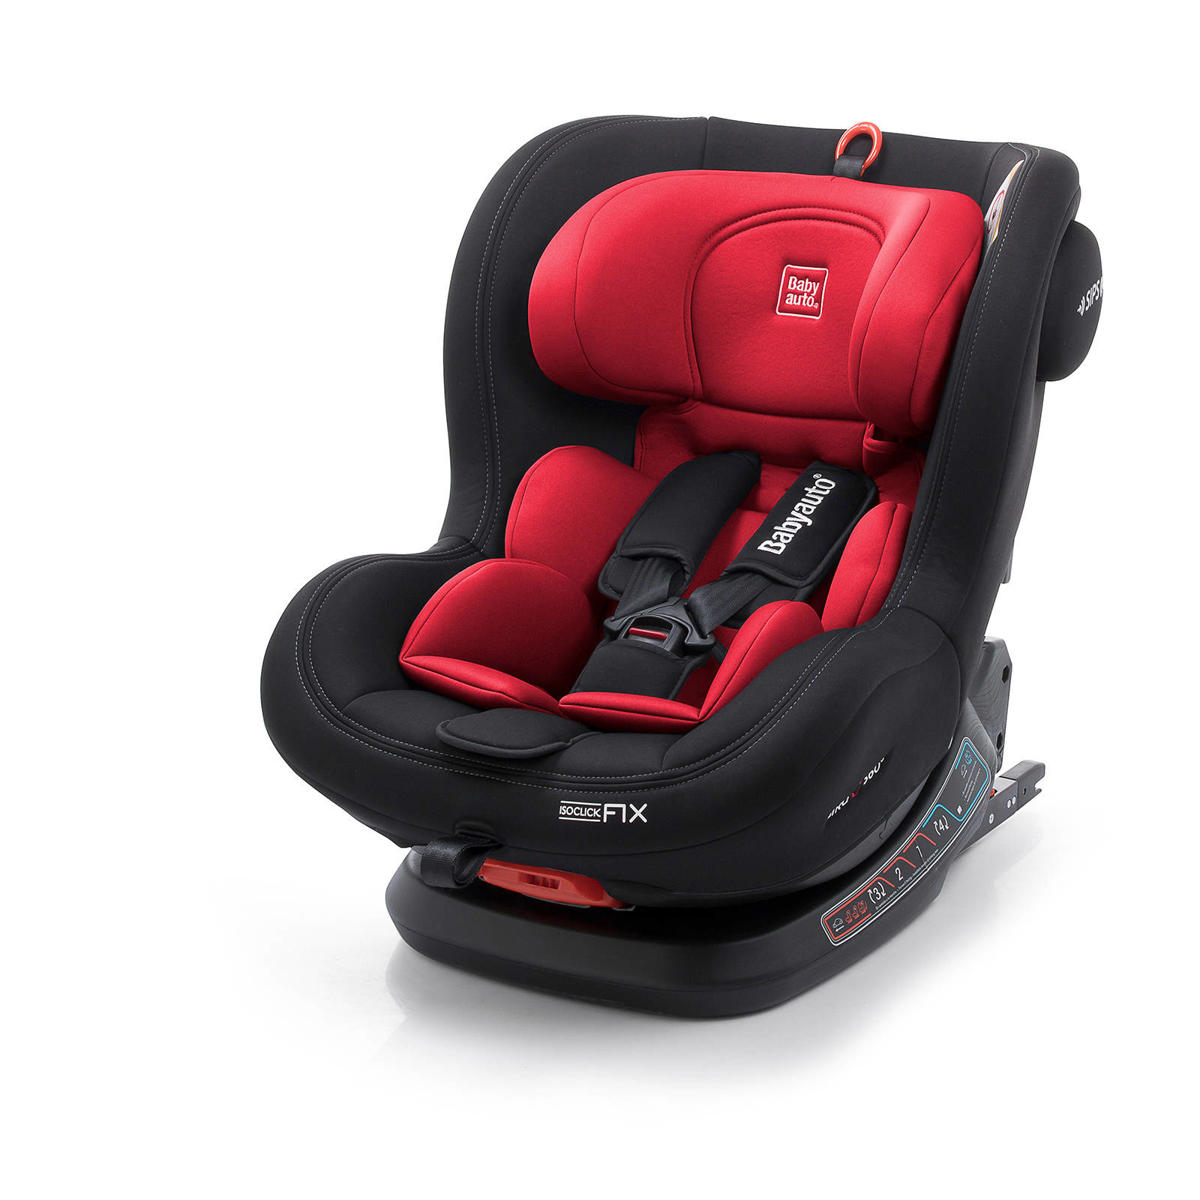 veronderstellen Malaise Uitlijnen Babyauto Biro Fix autostoel zwart/rood | wehkamp